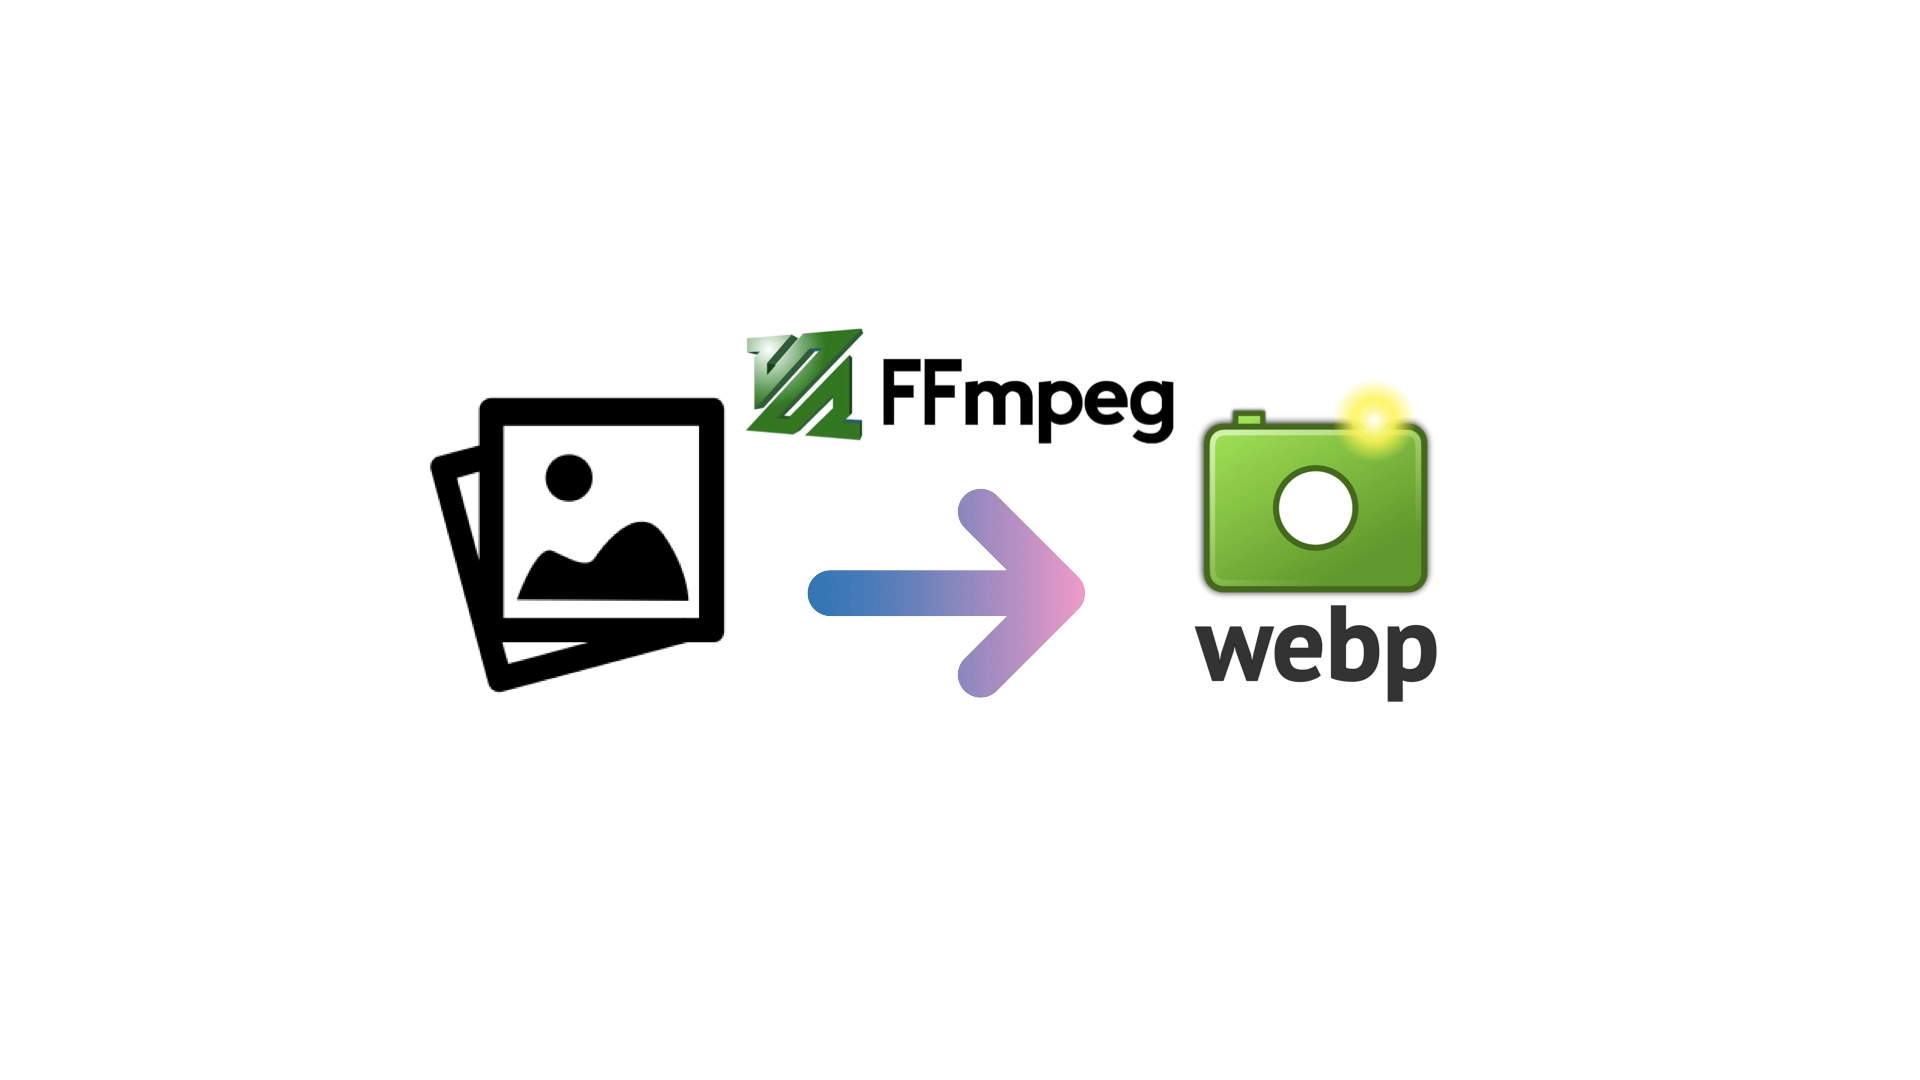 通过 FFmpeg 批量转换目录下图片至 WebP